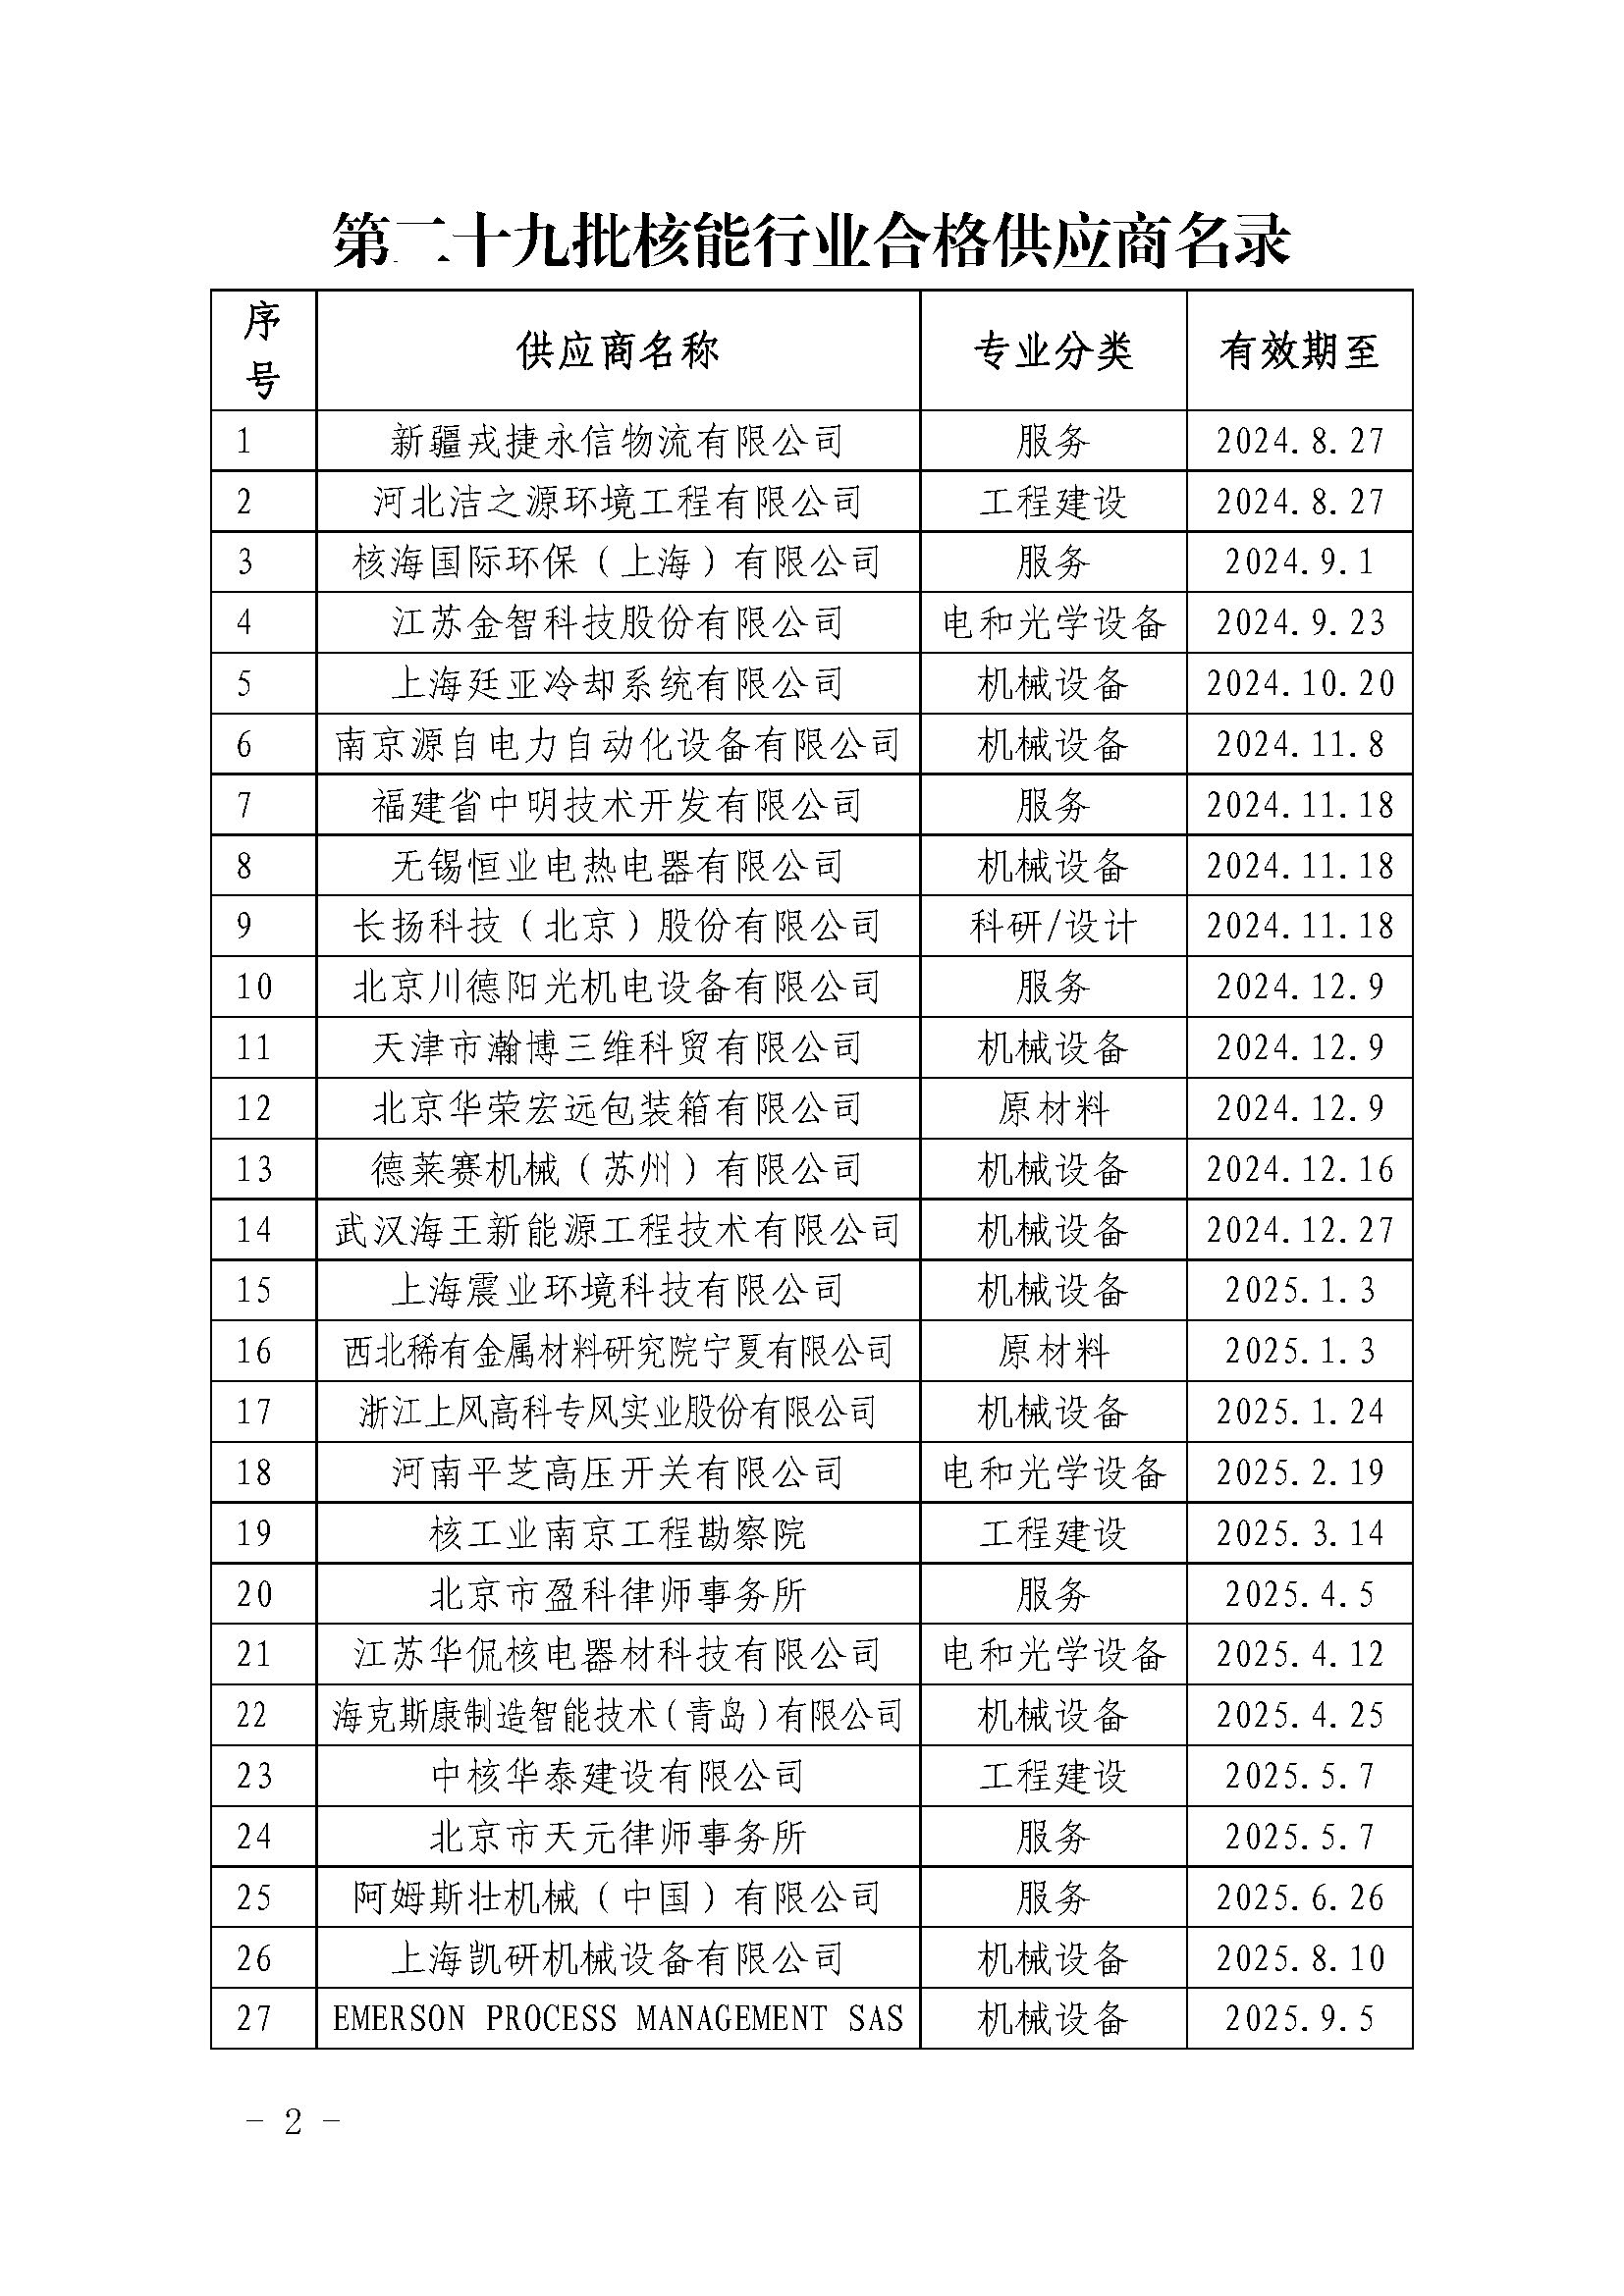 中国核能行业协会关于发布第二十九批核能行业合格供应商名录的公告_页面_2.jpg